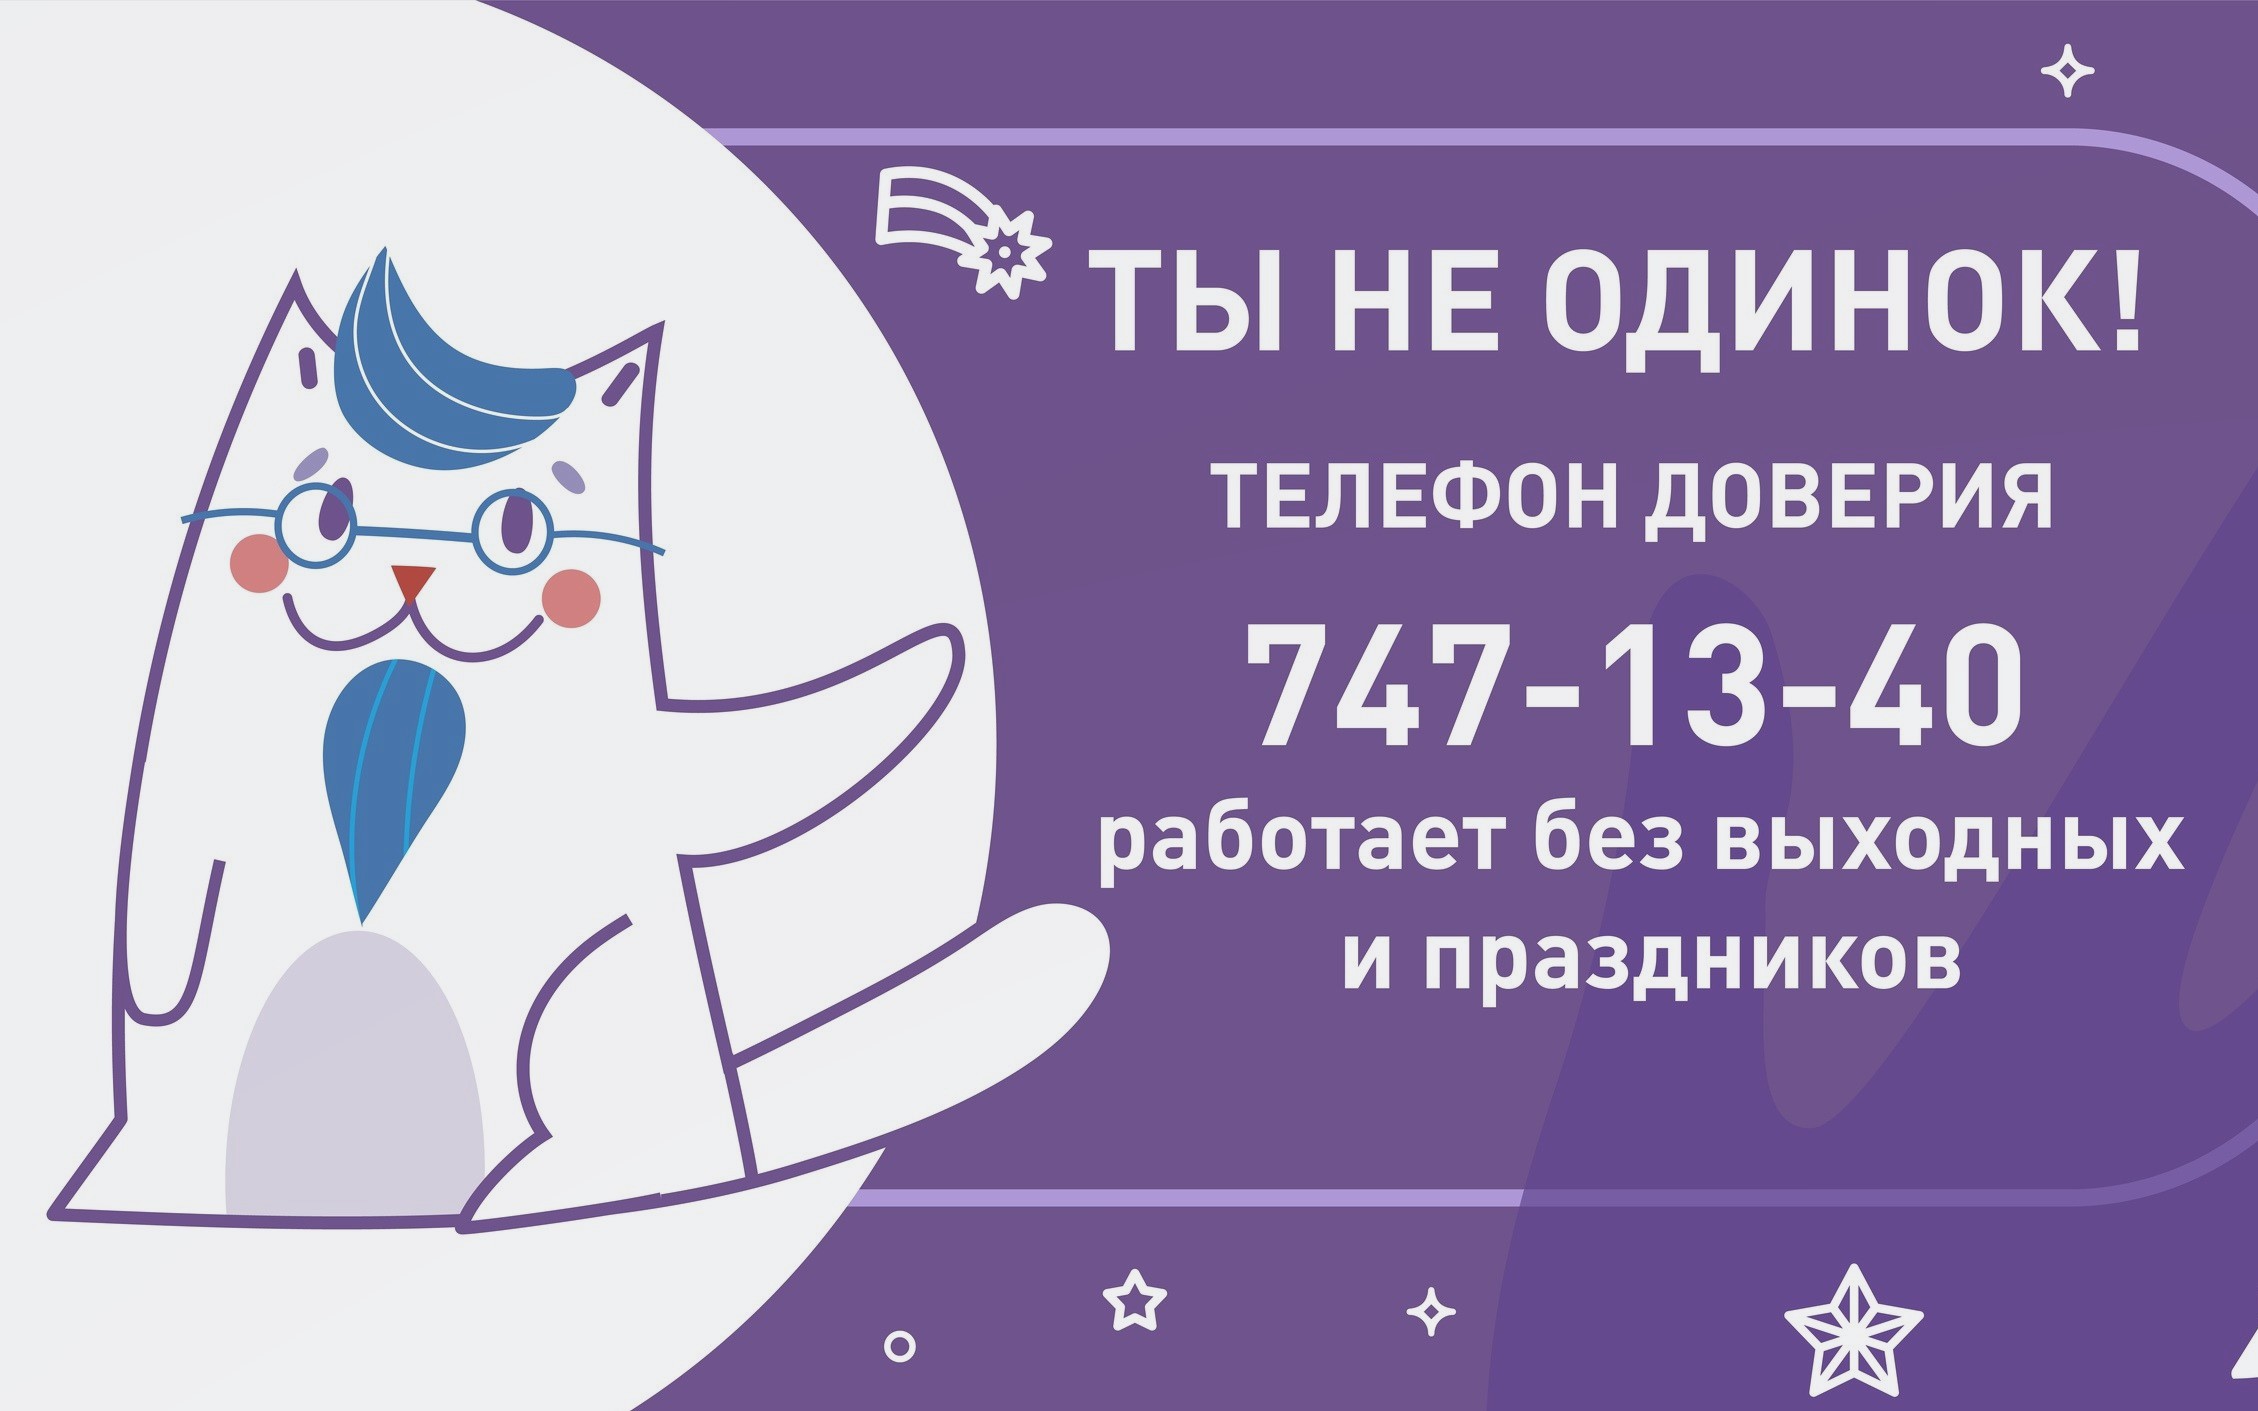 В Петербурге телефон доверия для детей и подростков будет работать все праздники